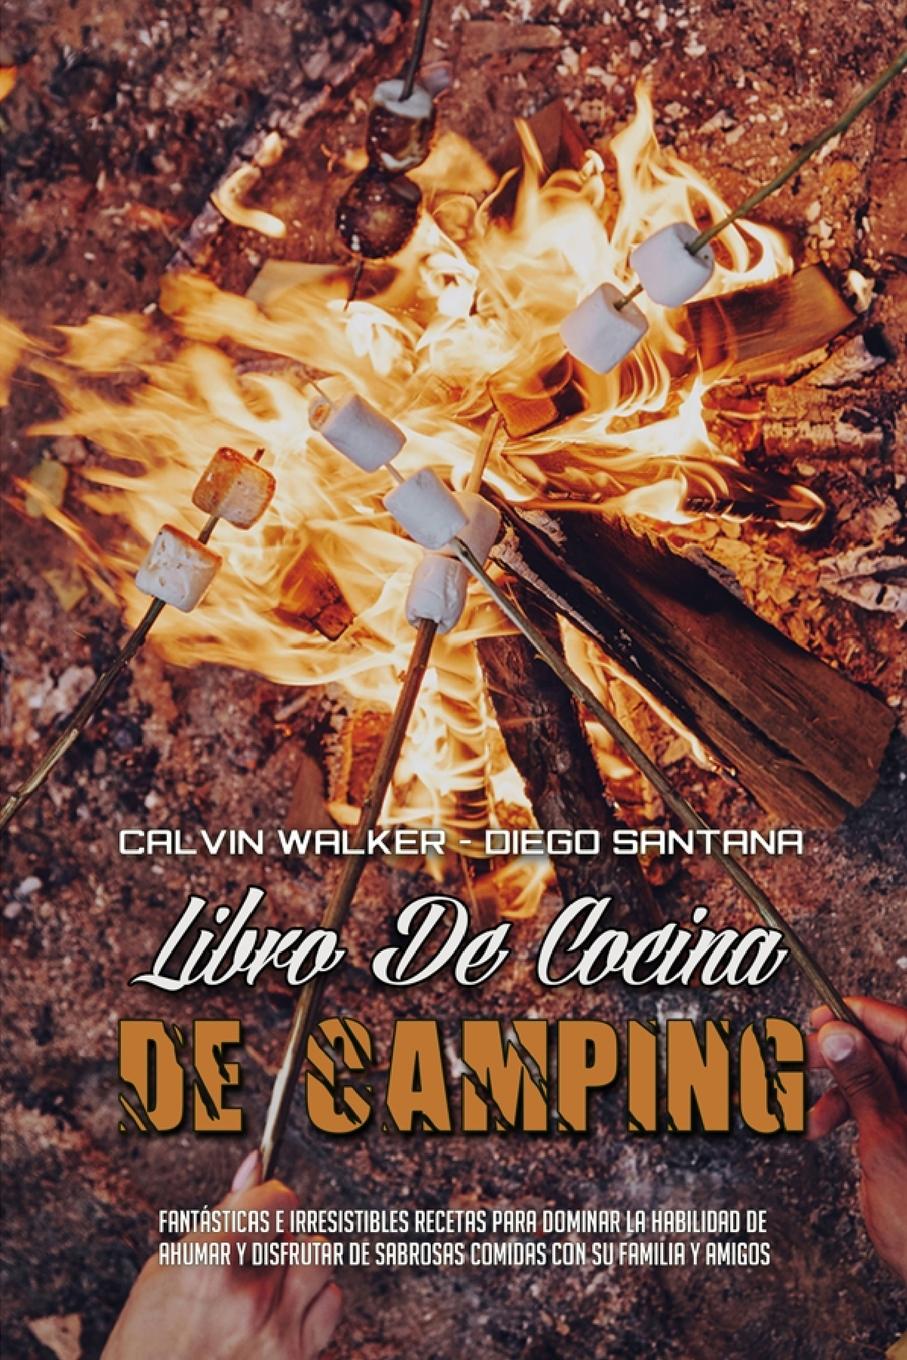 Carte Libro De Cocina De Camping Diego Santana